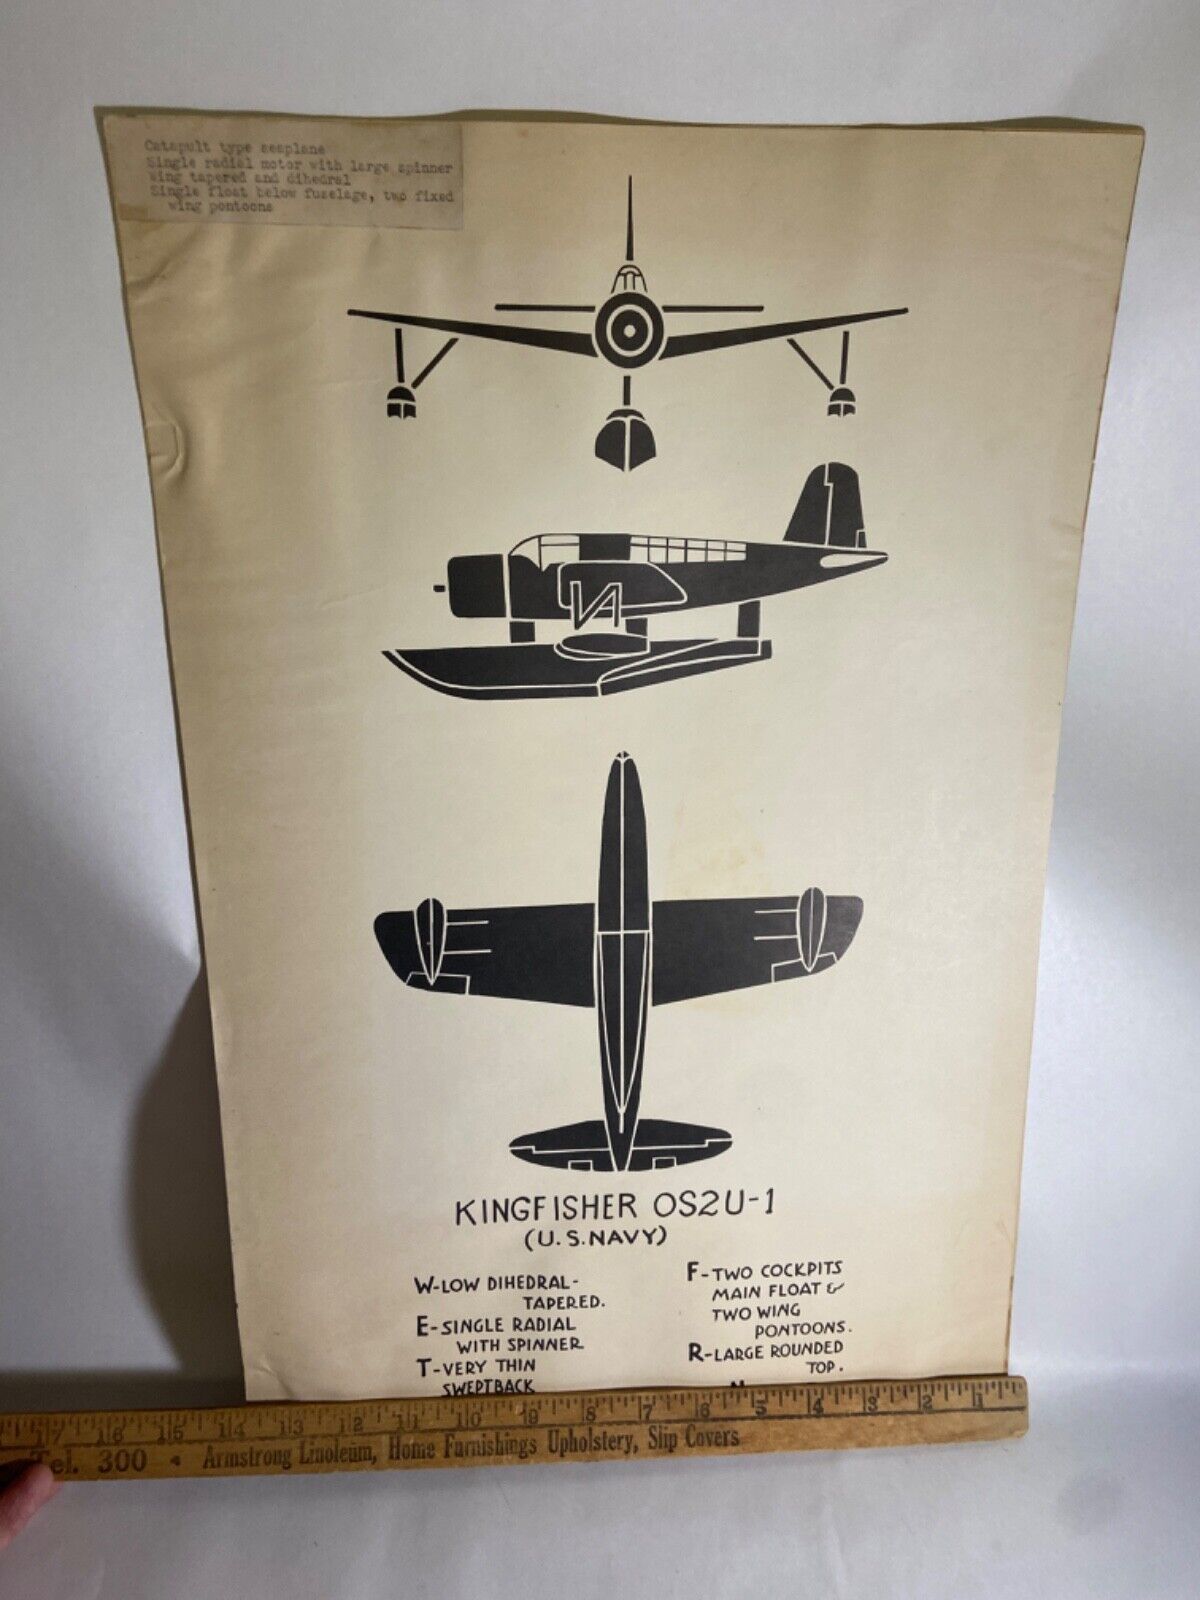 Vintage WWII Vought OS2U Kingfisher Observation Floatplane Recognition Poster Без бренда - фотография #3